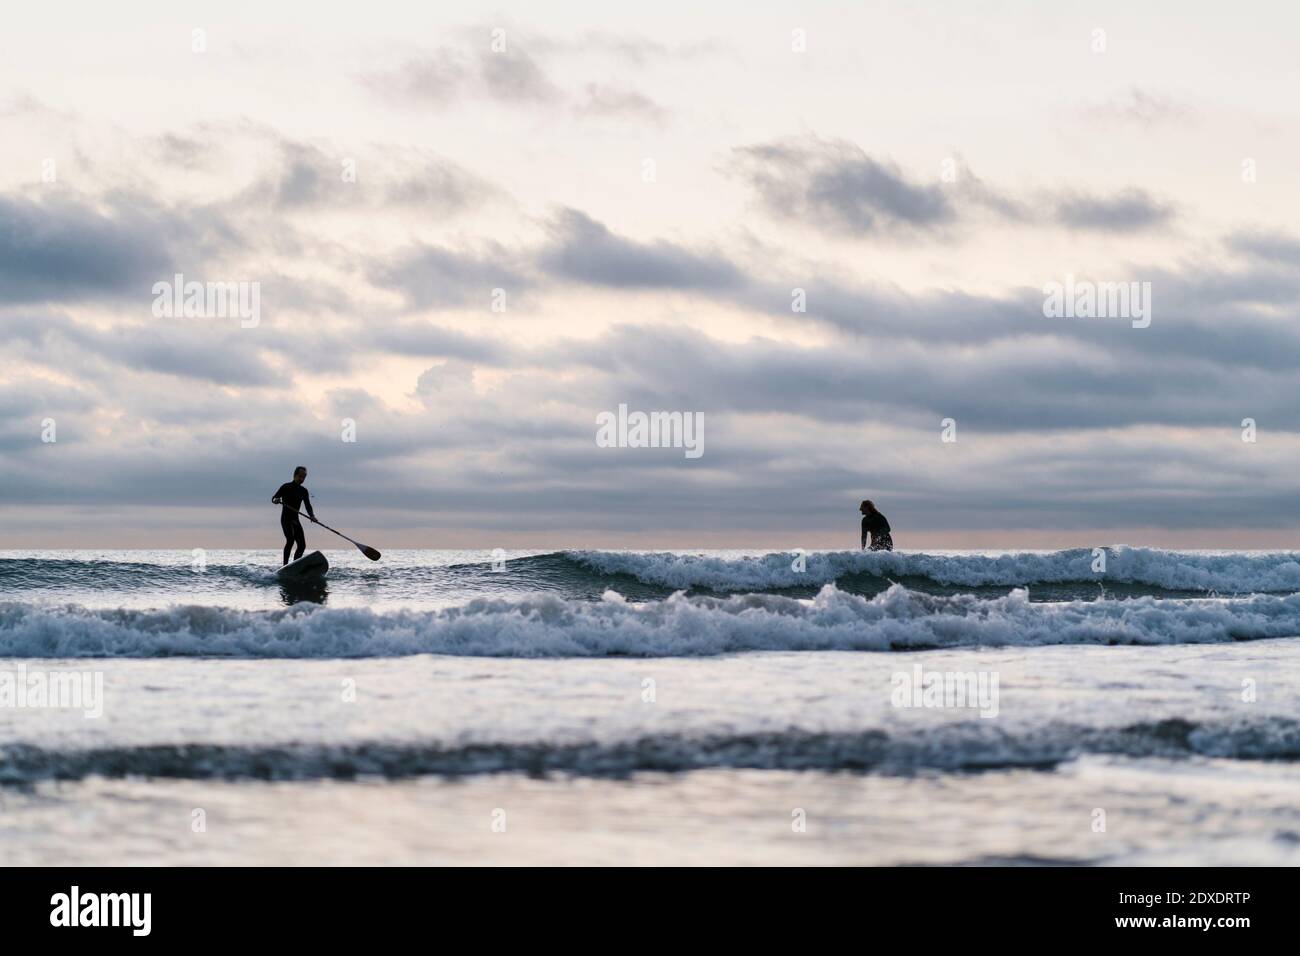 Freunde surfen mit Paddleboard auf dem Meer gegen den Himmel während der Dämmerung Stockfoto